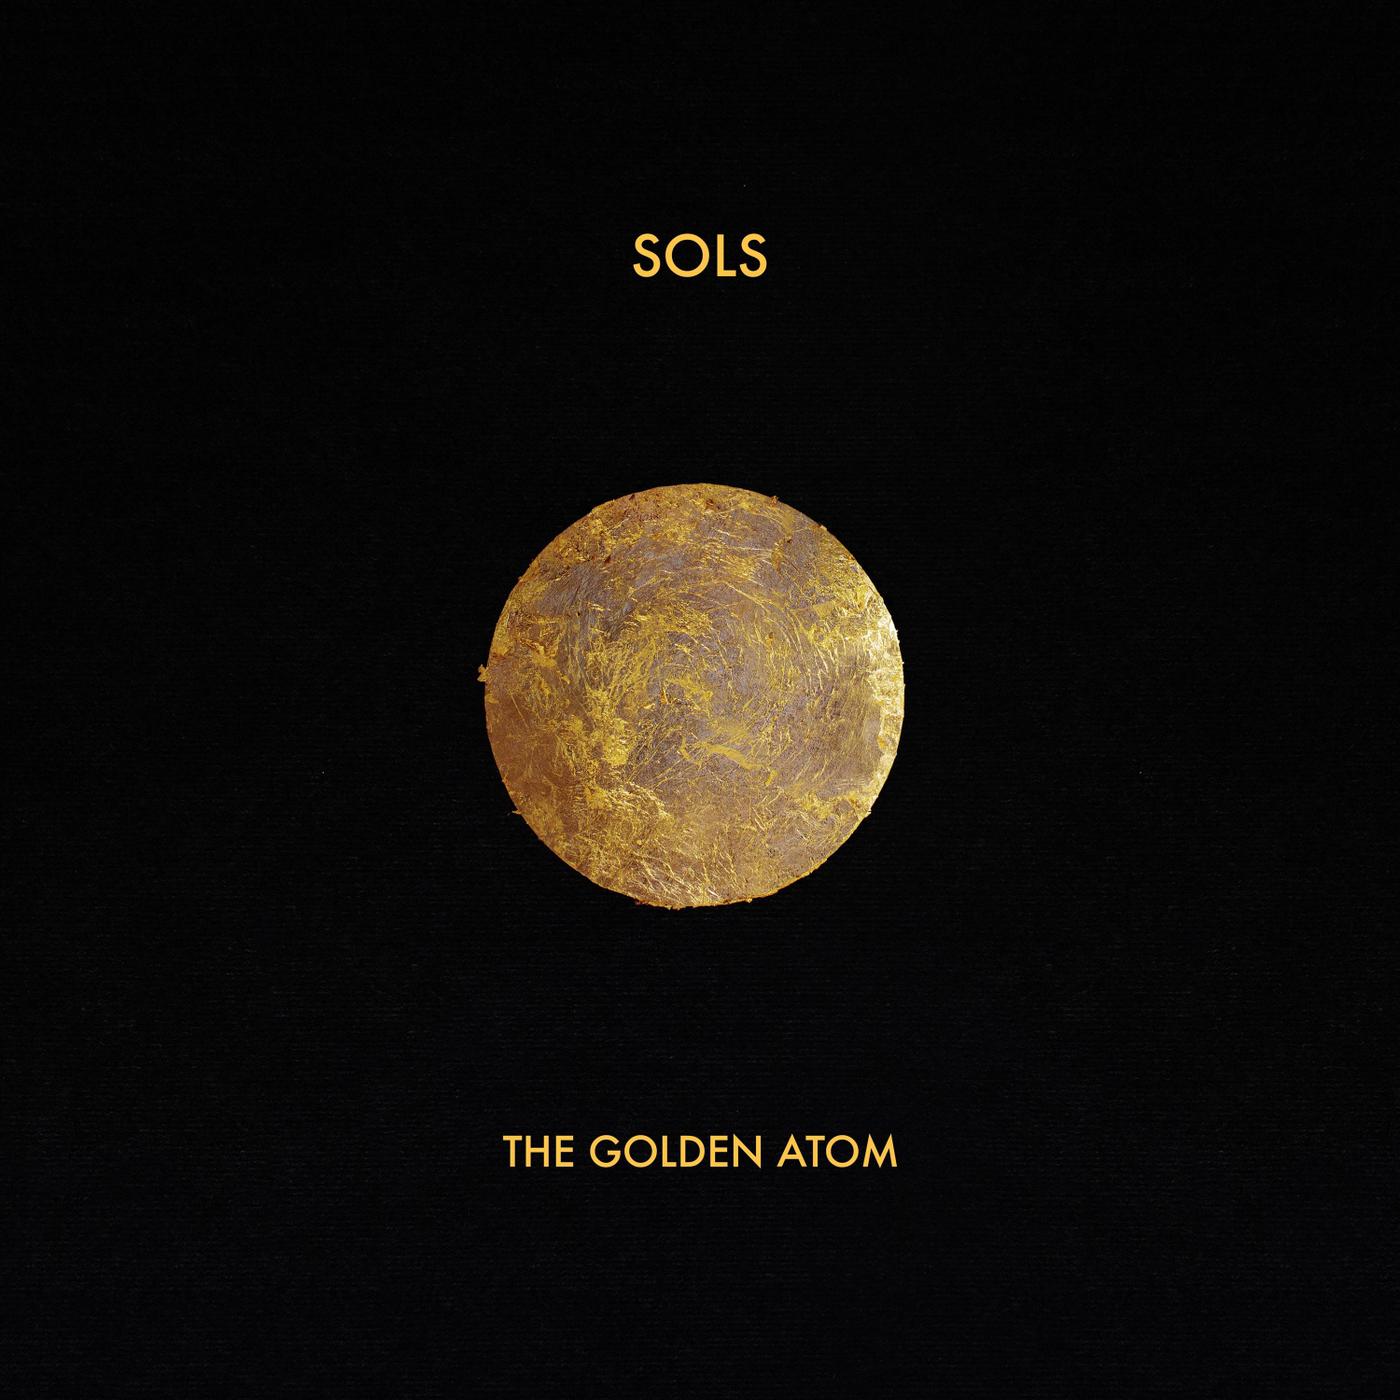 The Golden Atom